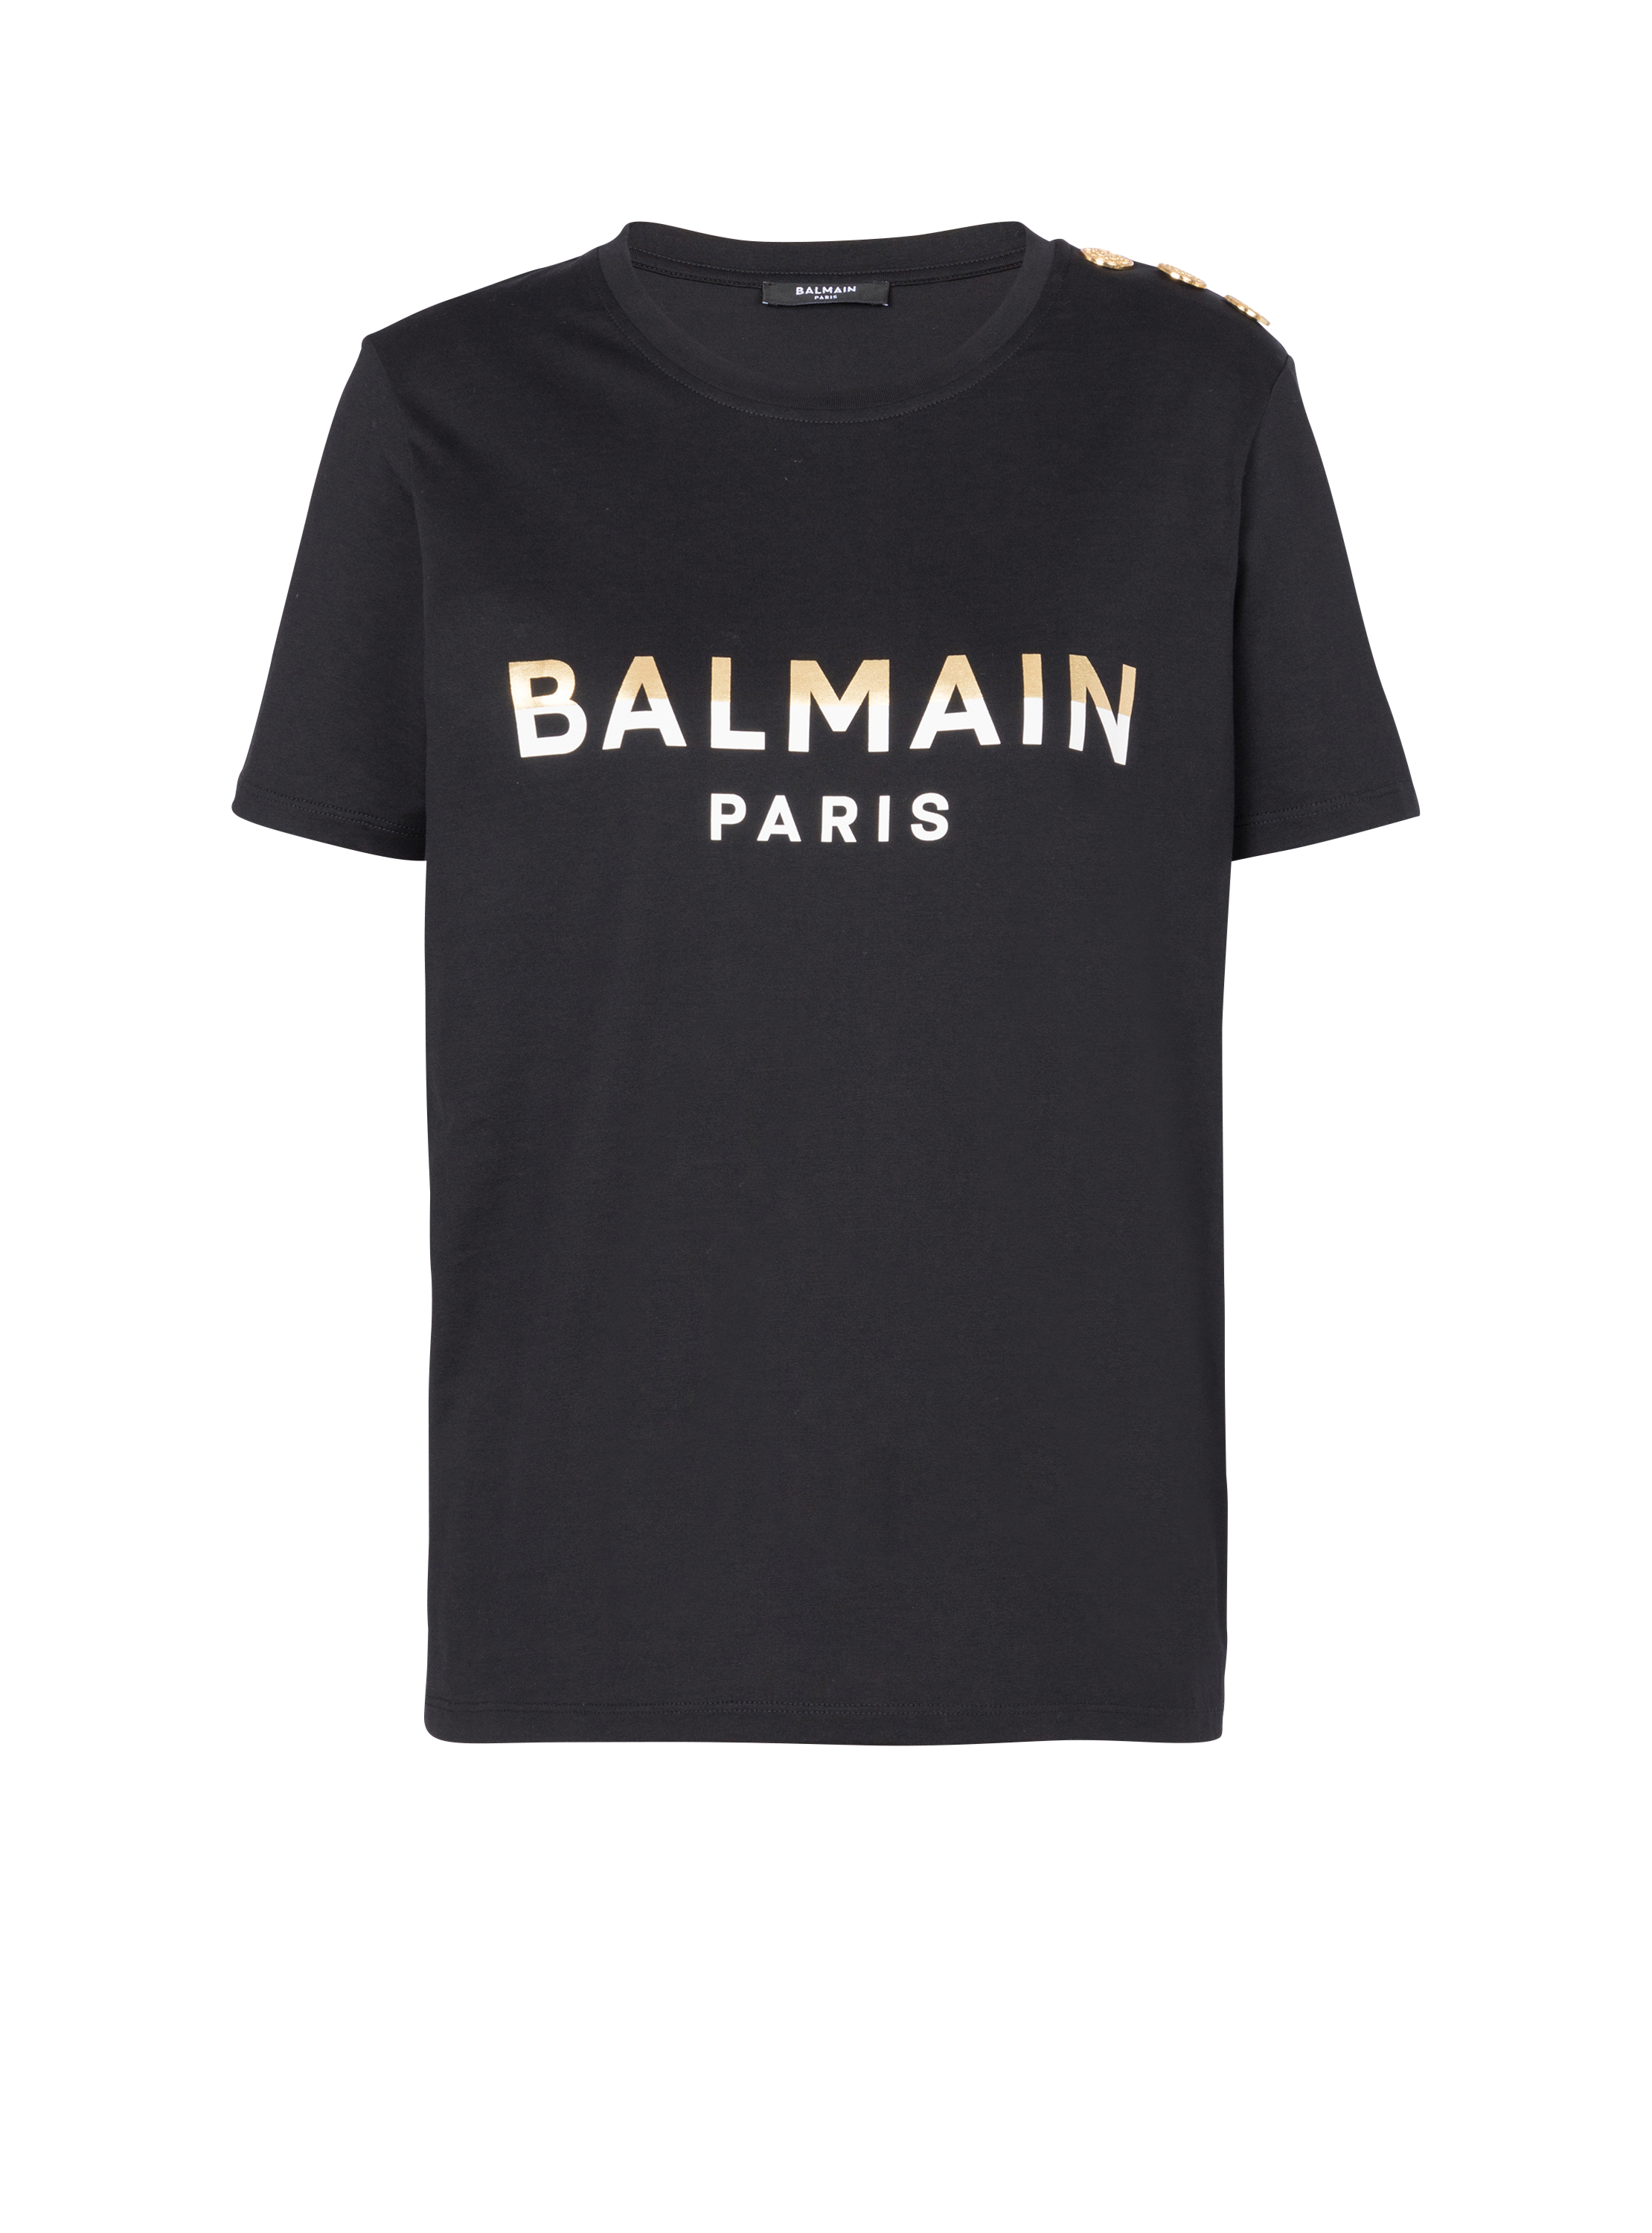 Balmain Paris T-Shirt mit Knöpfen, schwarz, hi-res